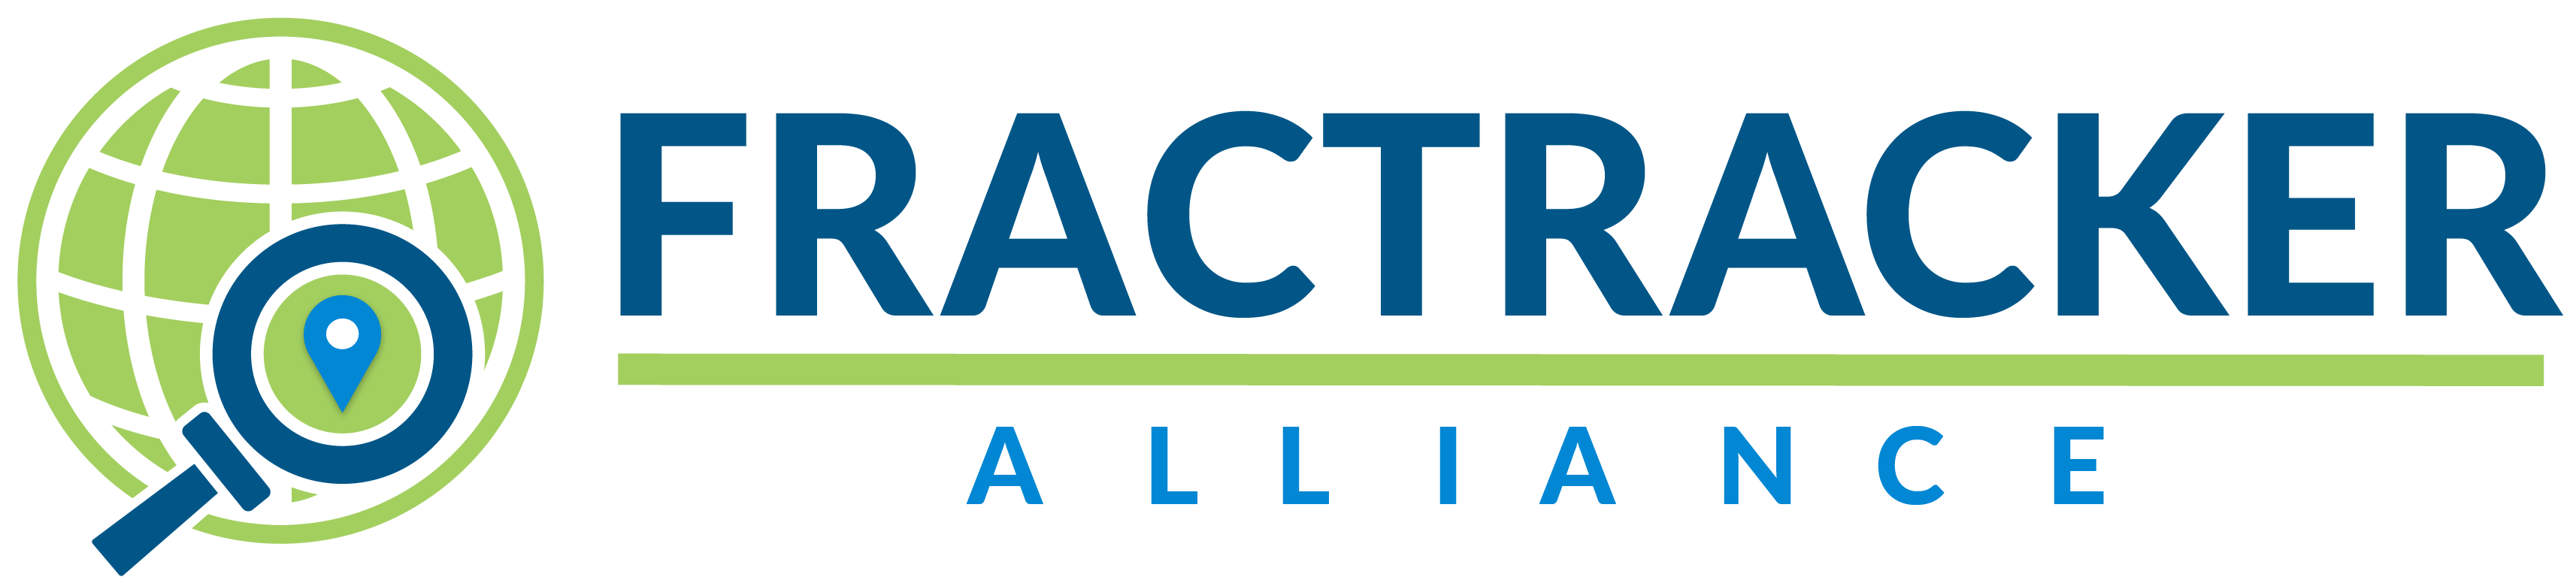 FracTracker Alliance